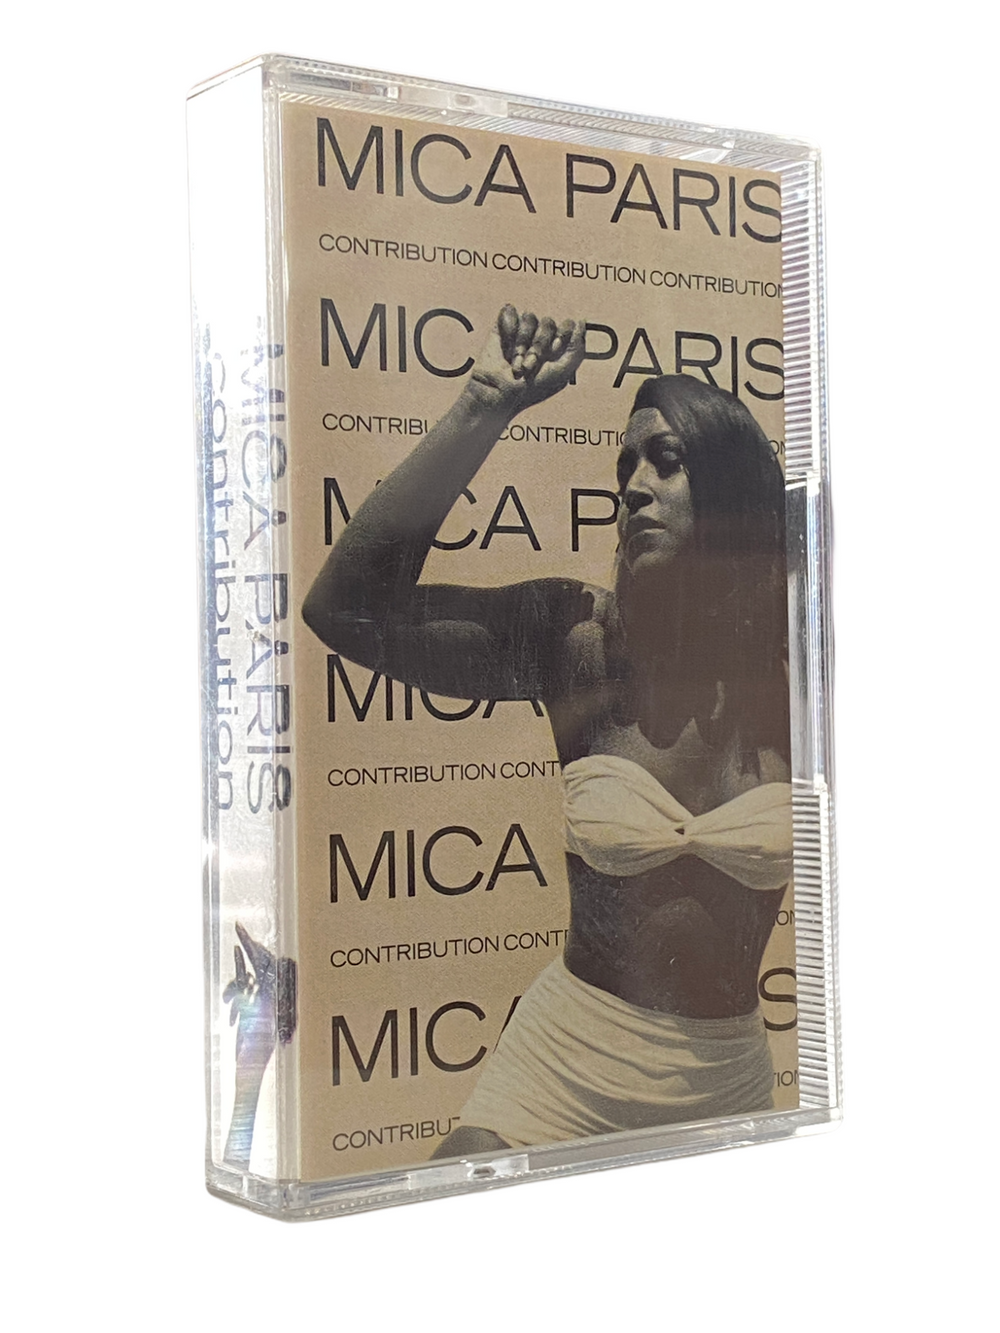 Prince – Mica Paris Contribution Original Cassette Tape UK 1990 Release Prince